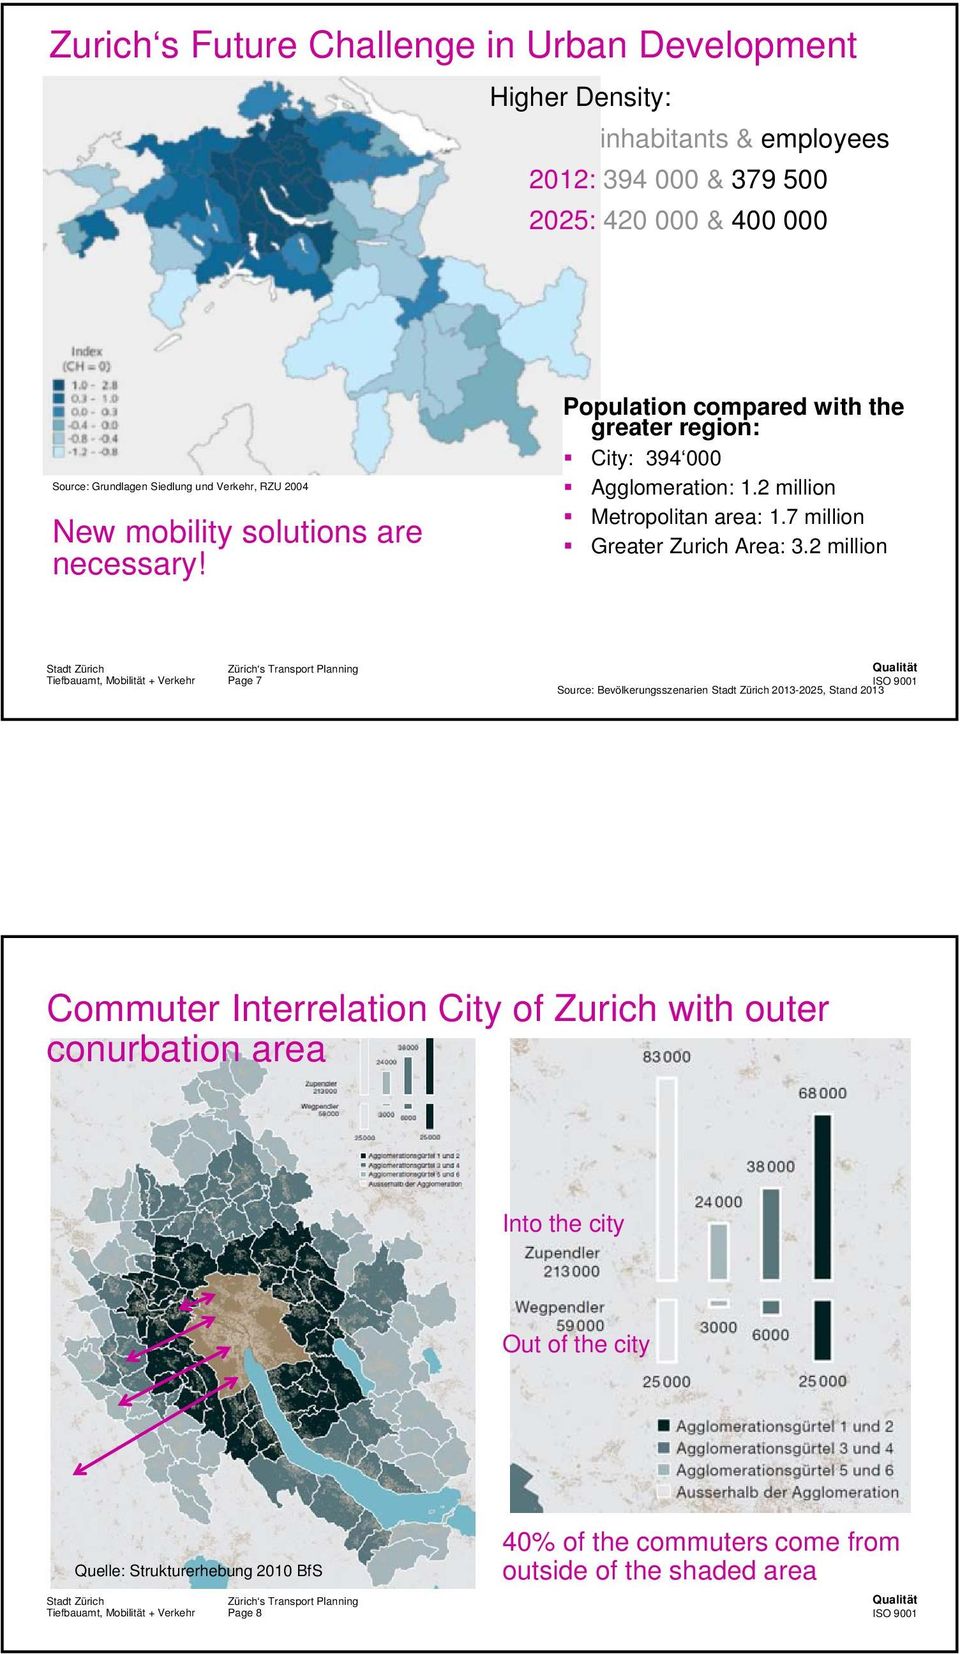 2 million Metropolitan area: 1.7 million Greater Zurich Area: 3.